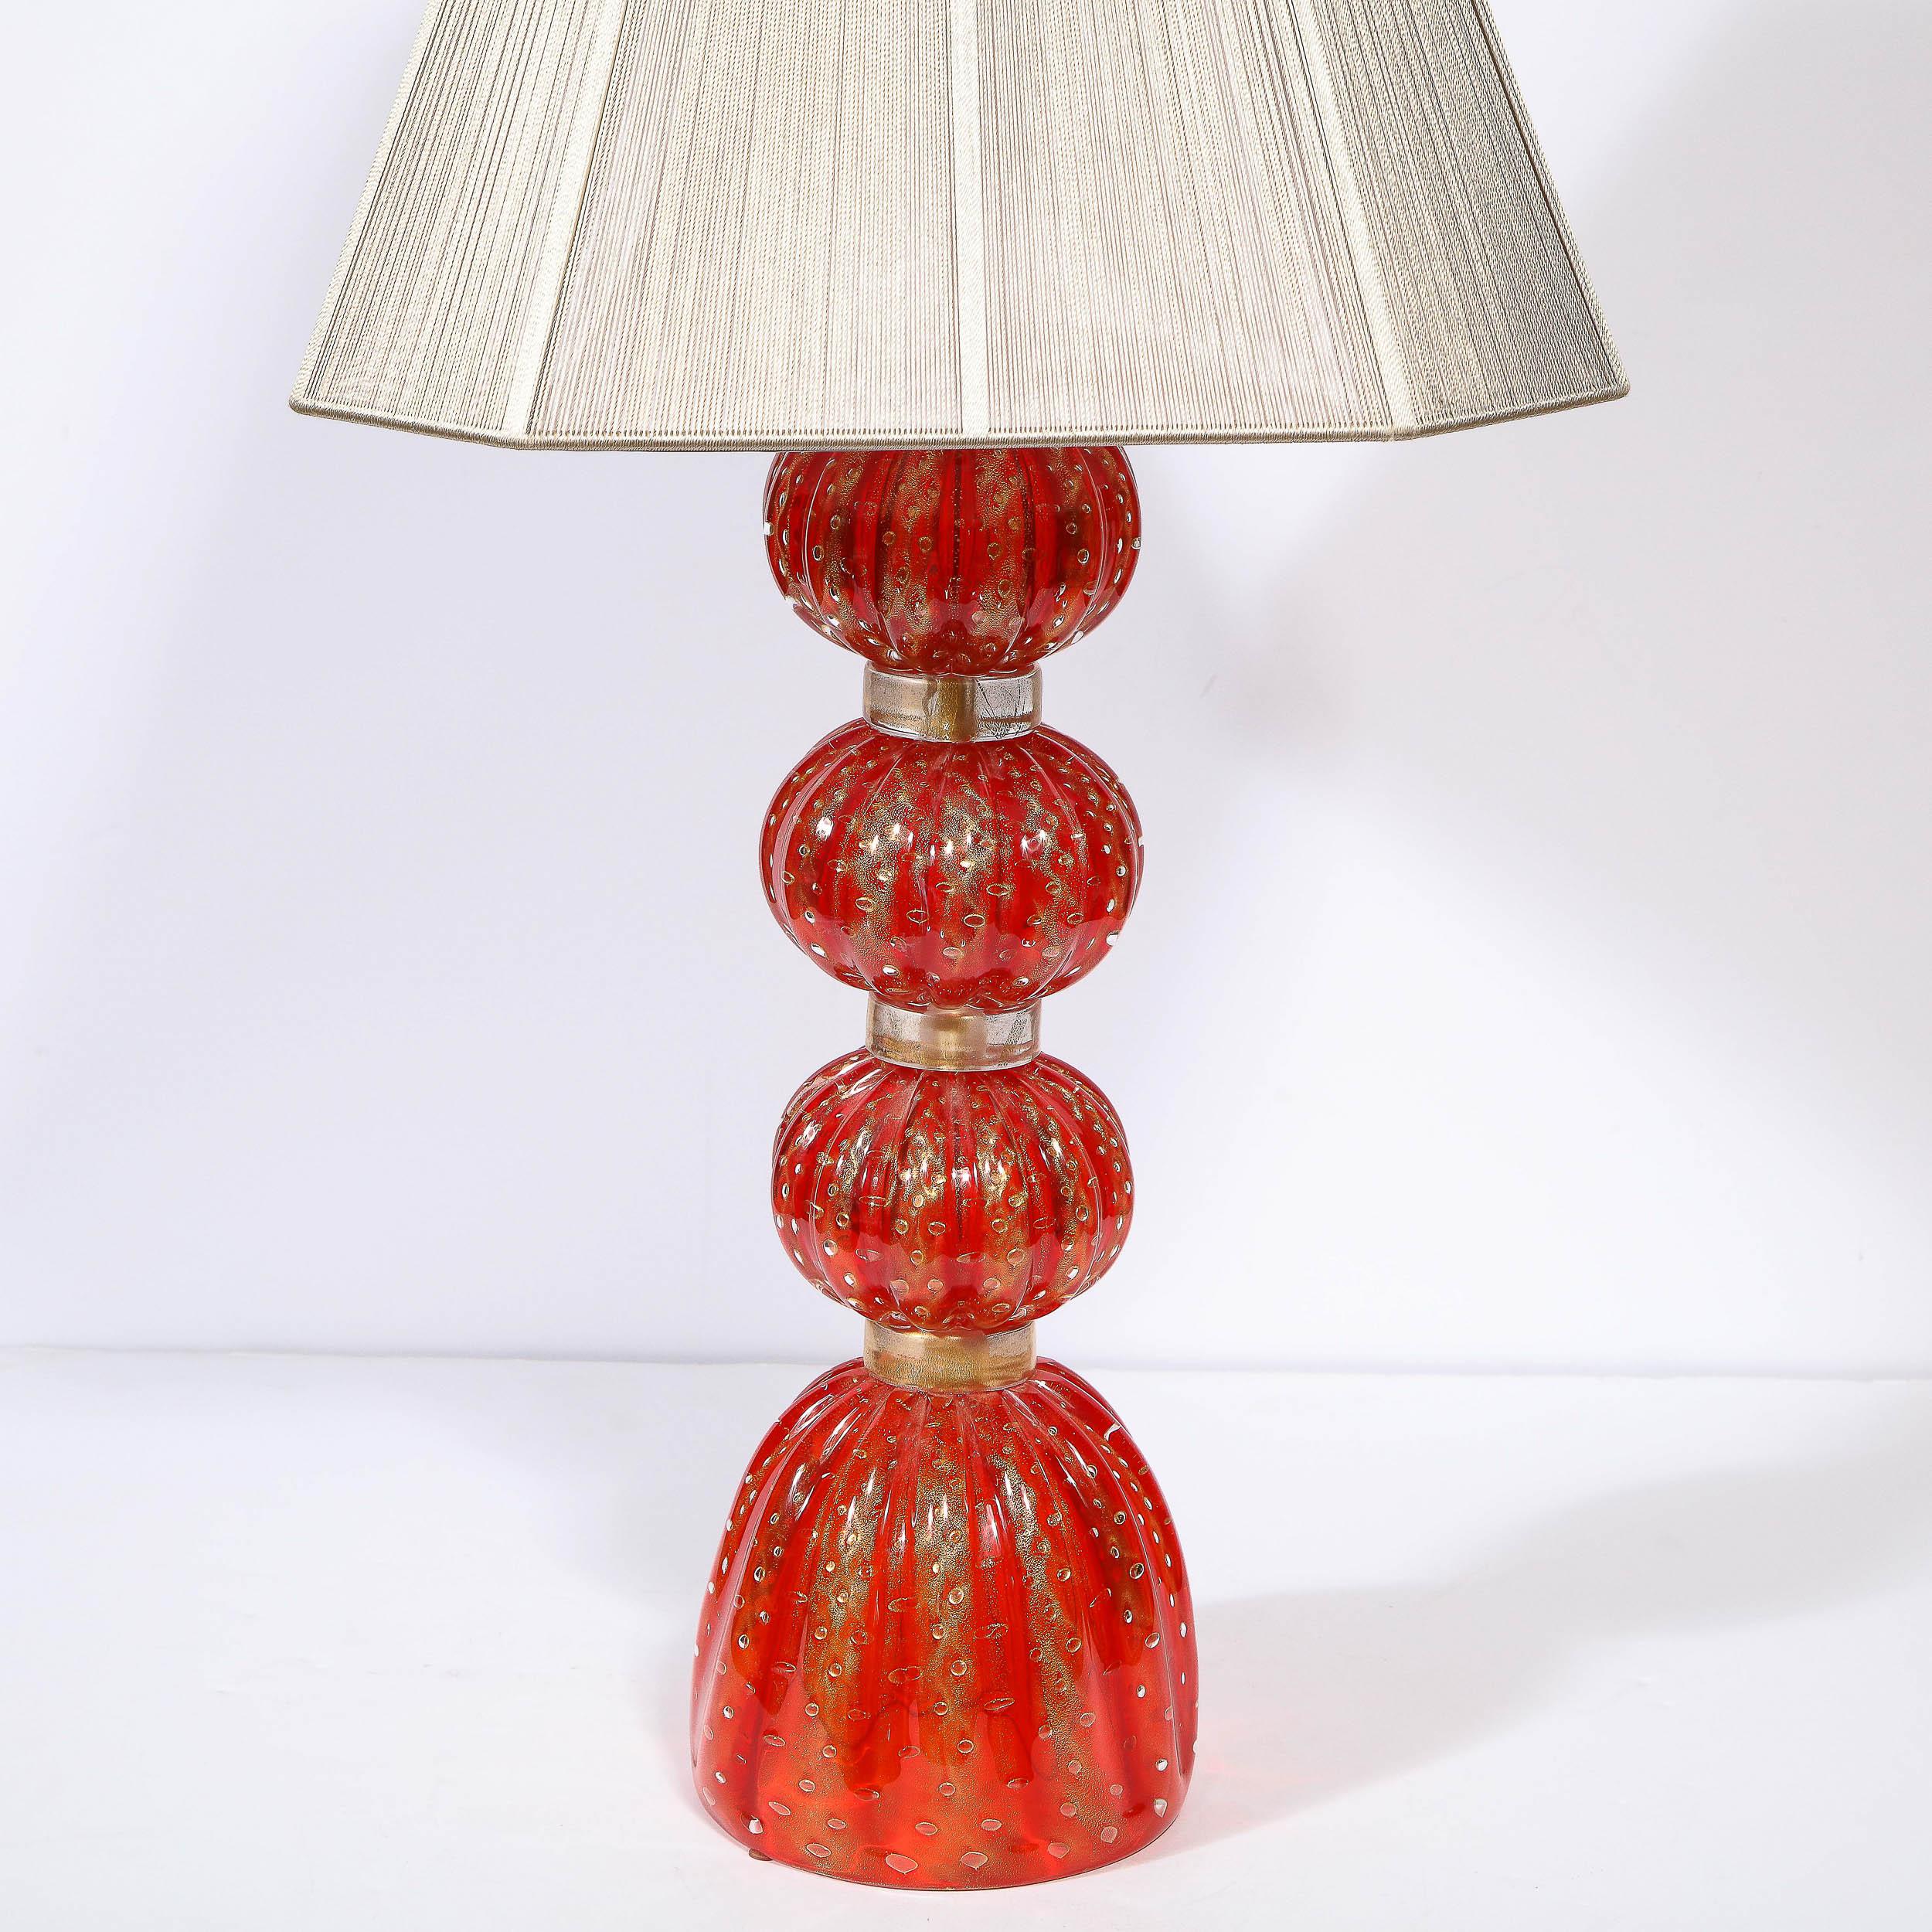 Diese wunderschöne modernistische Lampe wurde in der zweiten Hälfte des 20. Jahrhunderts in Murano, Italien - der Insel vor der Küste Venedigs, die seit Jahrhunderten für ihre hervorragende Glasproduktion bekannt ist - hergestellt. Er besitzt eine